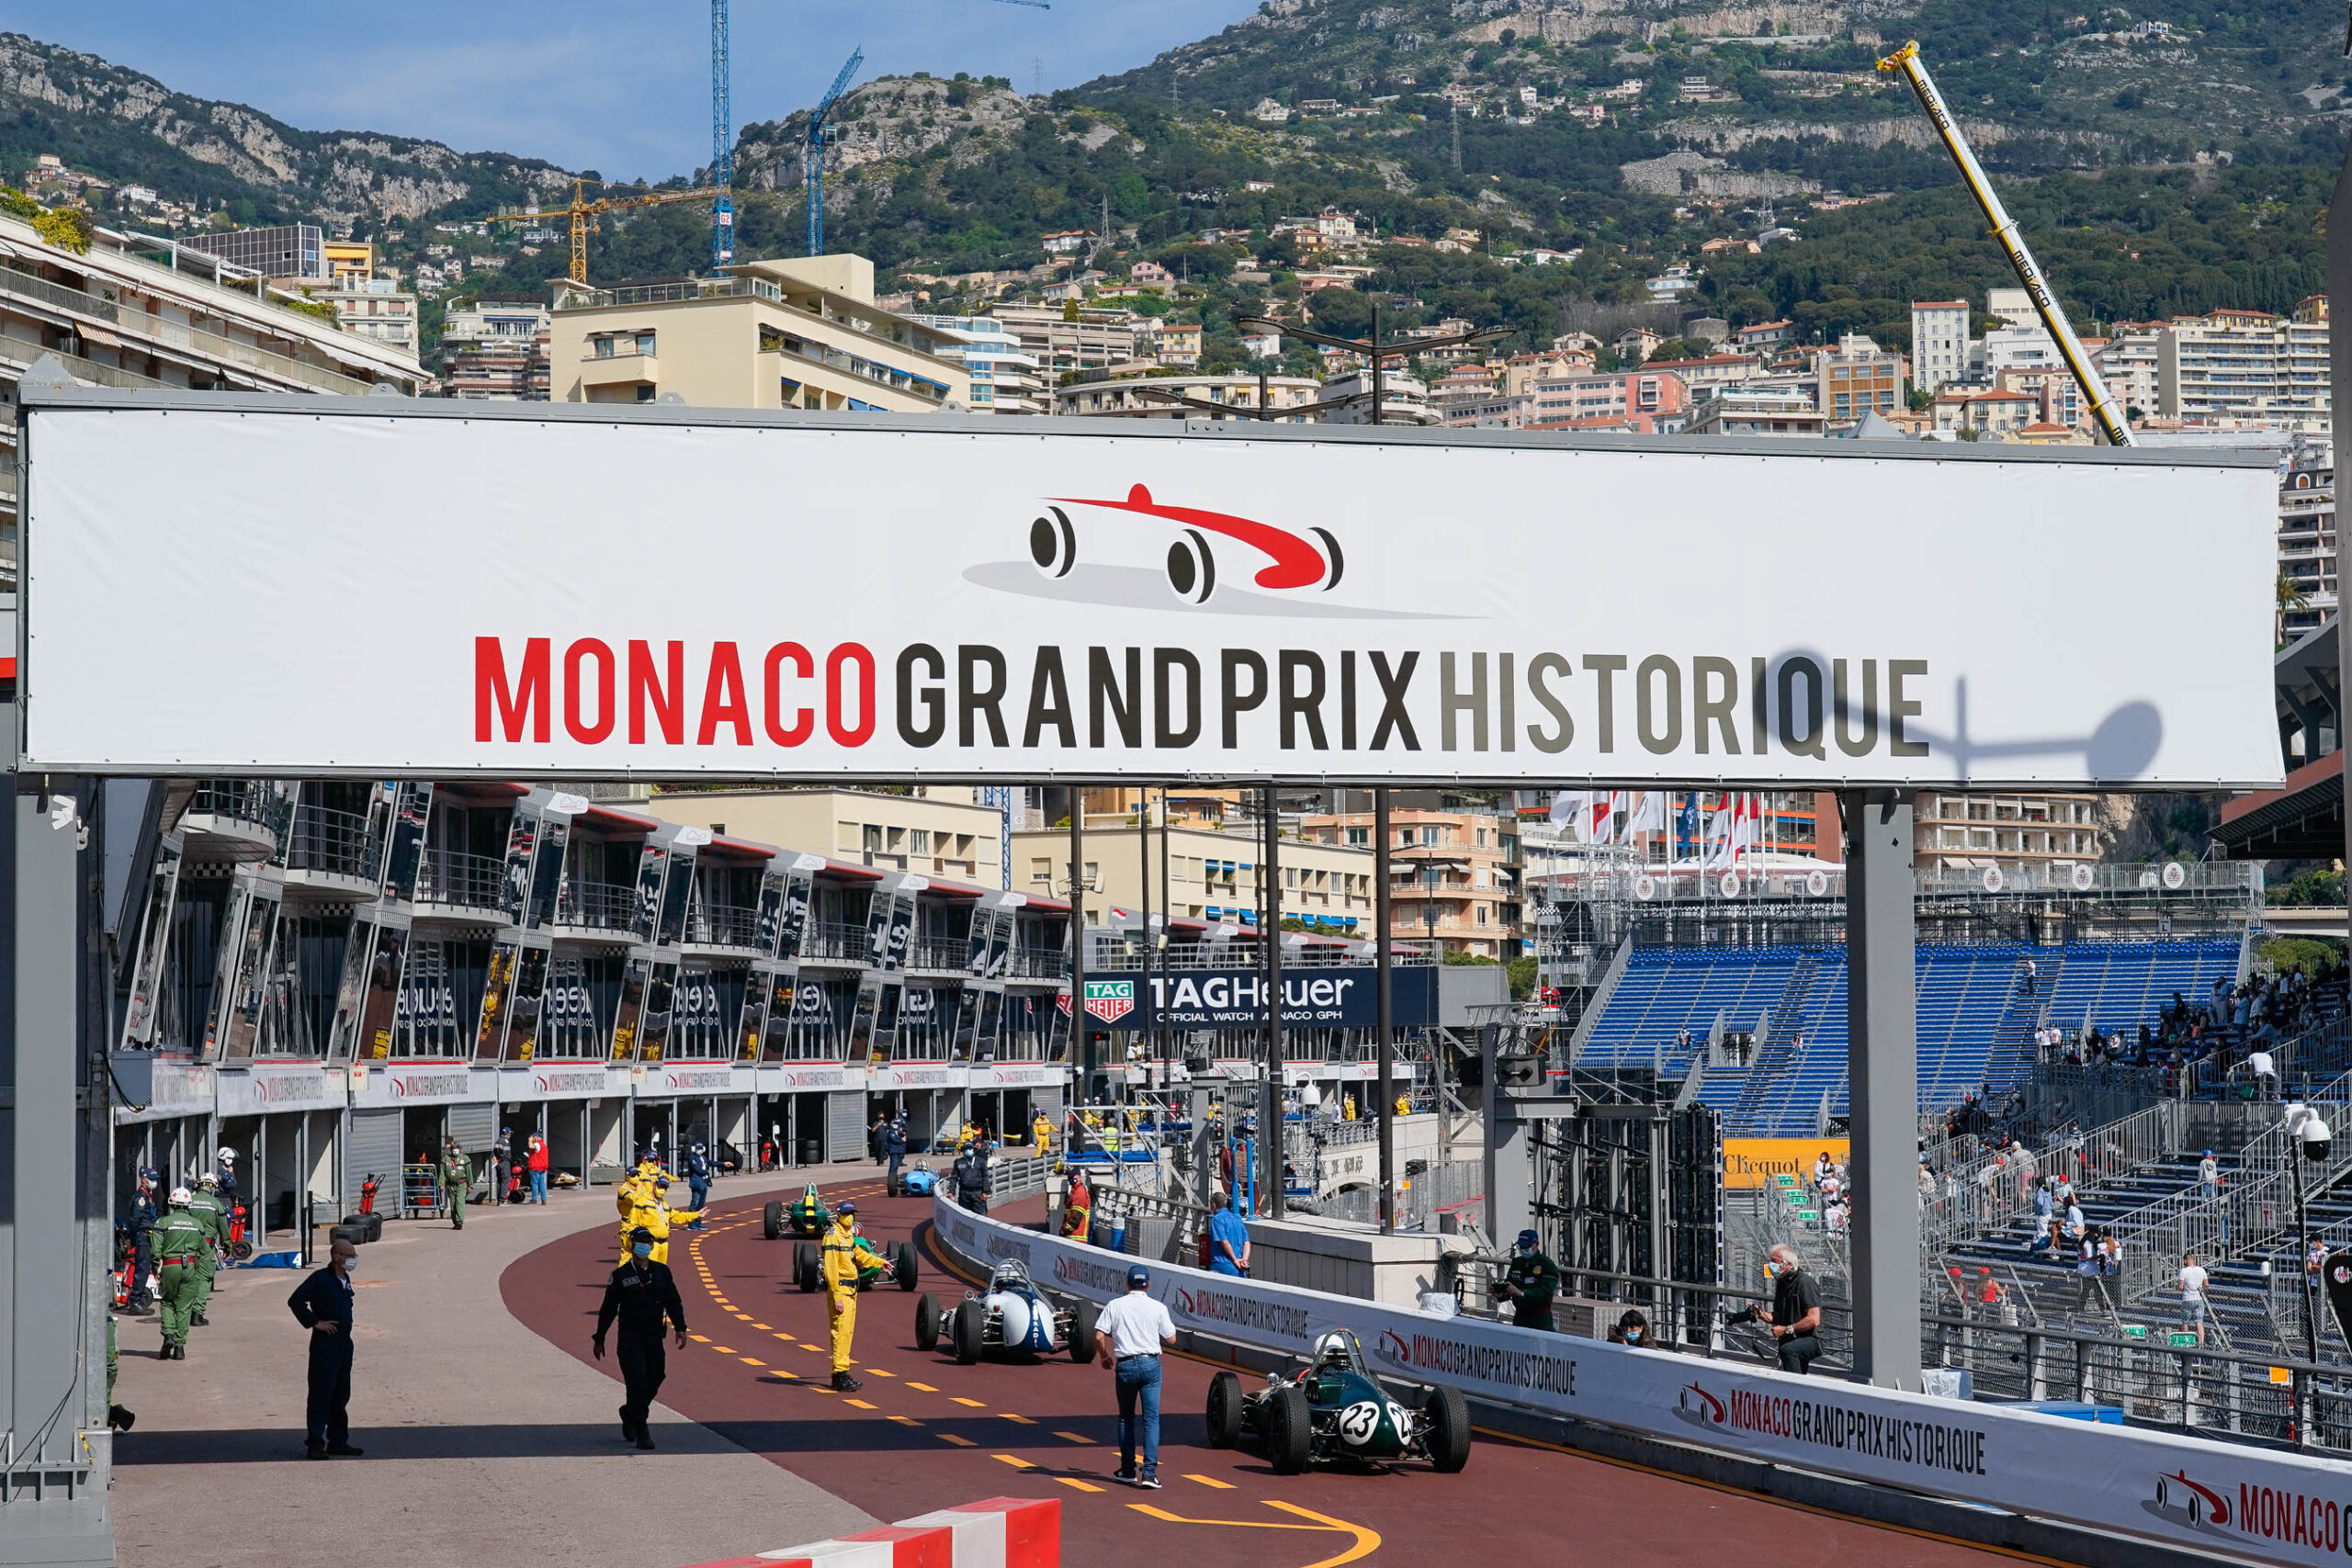 Monaco Grand Prix 2021: Back on centre stage